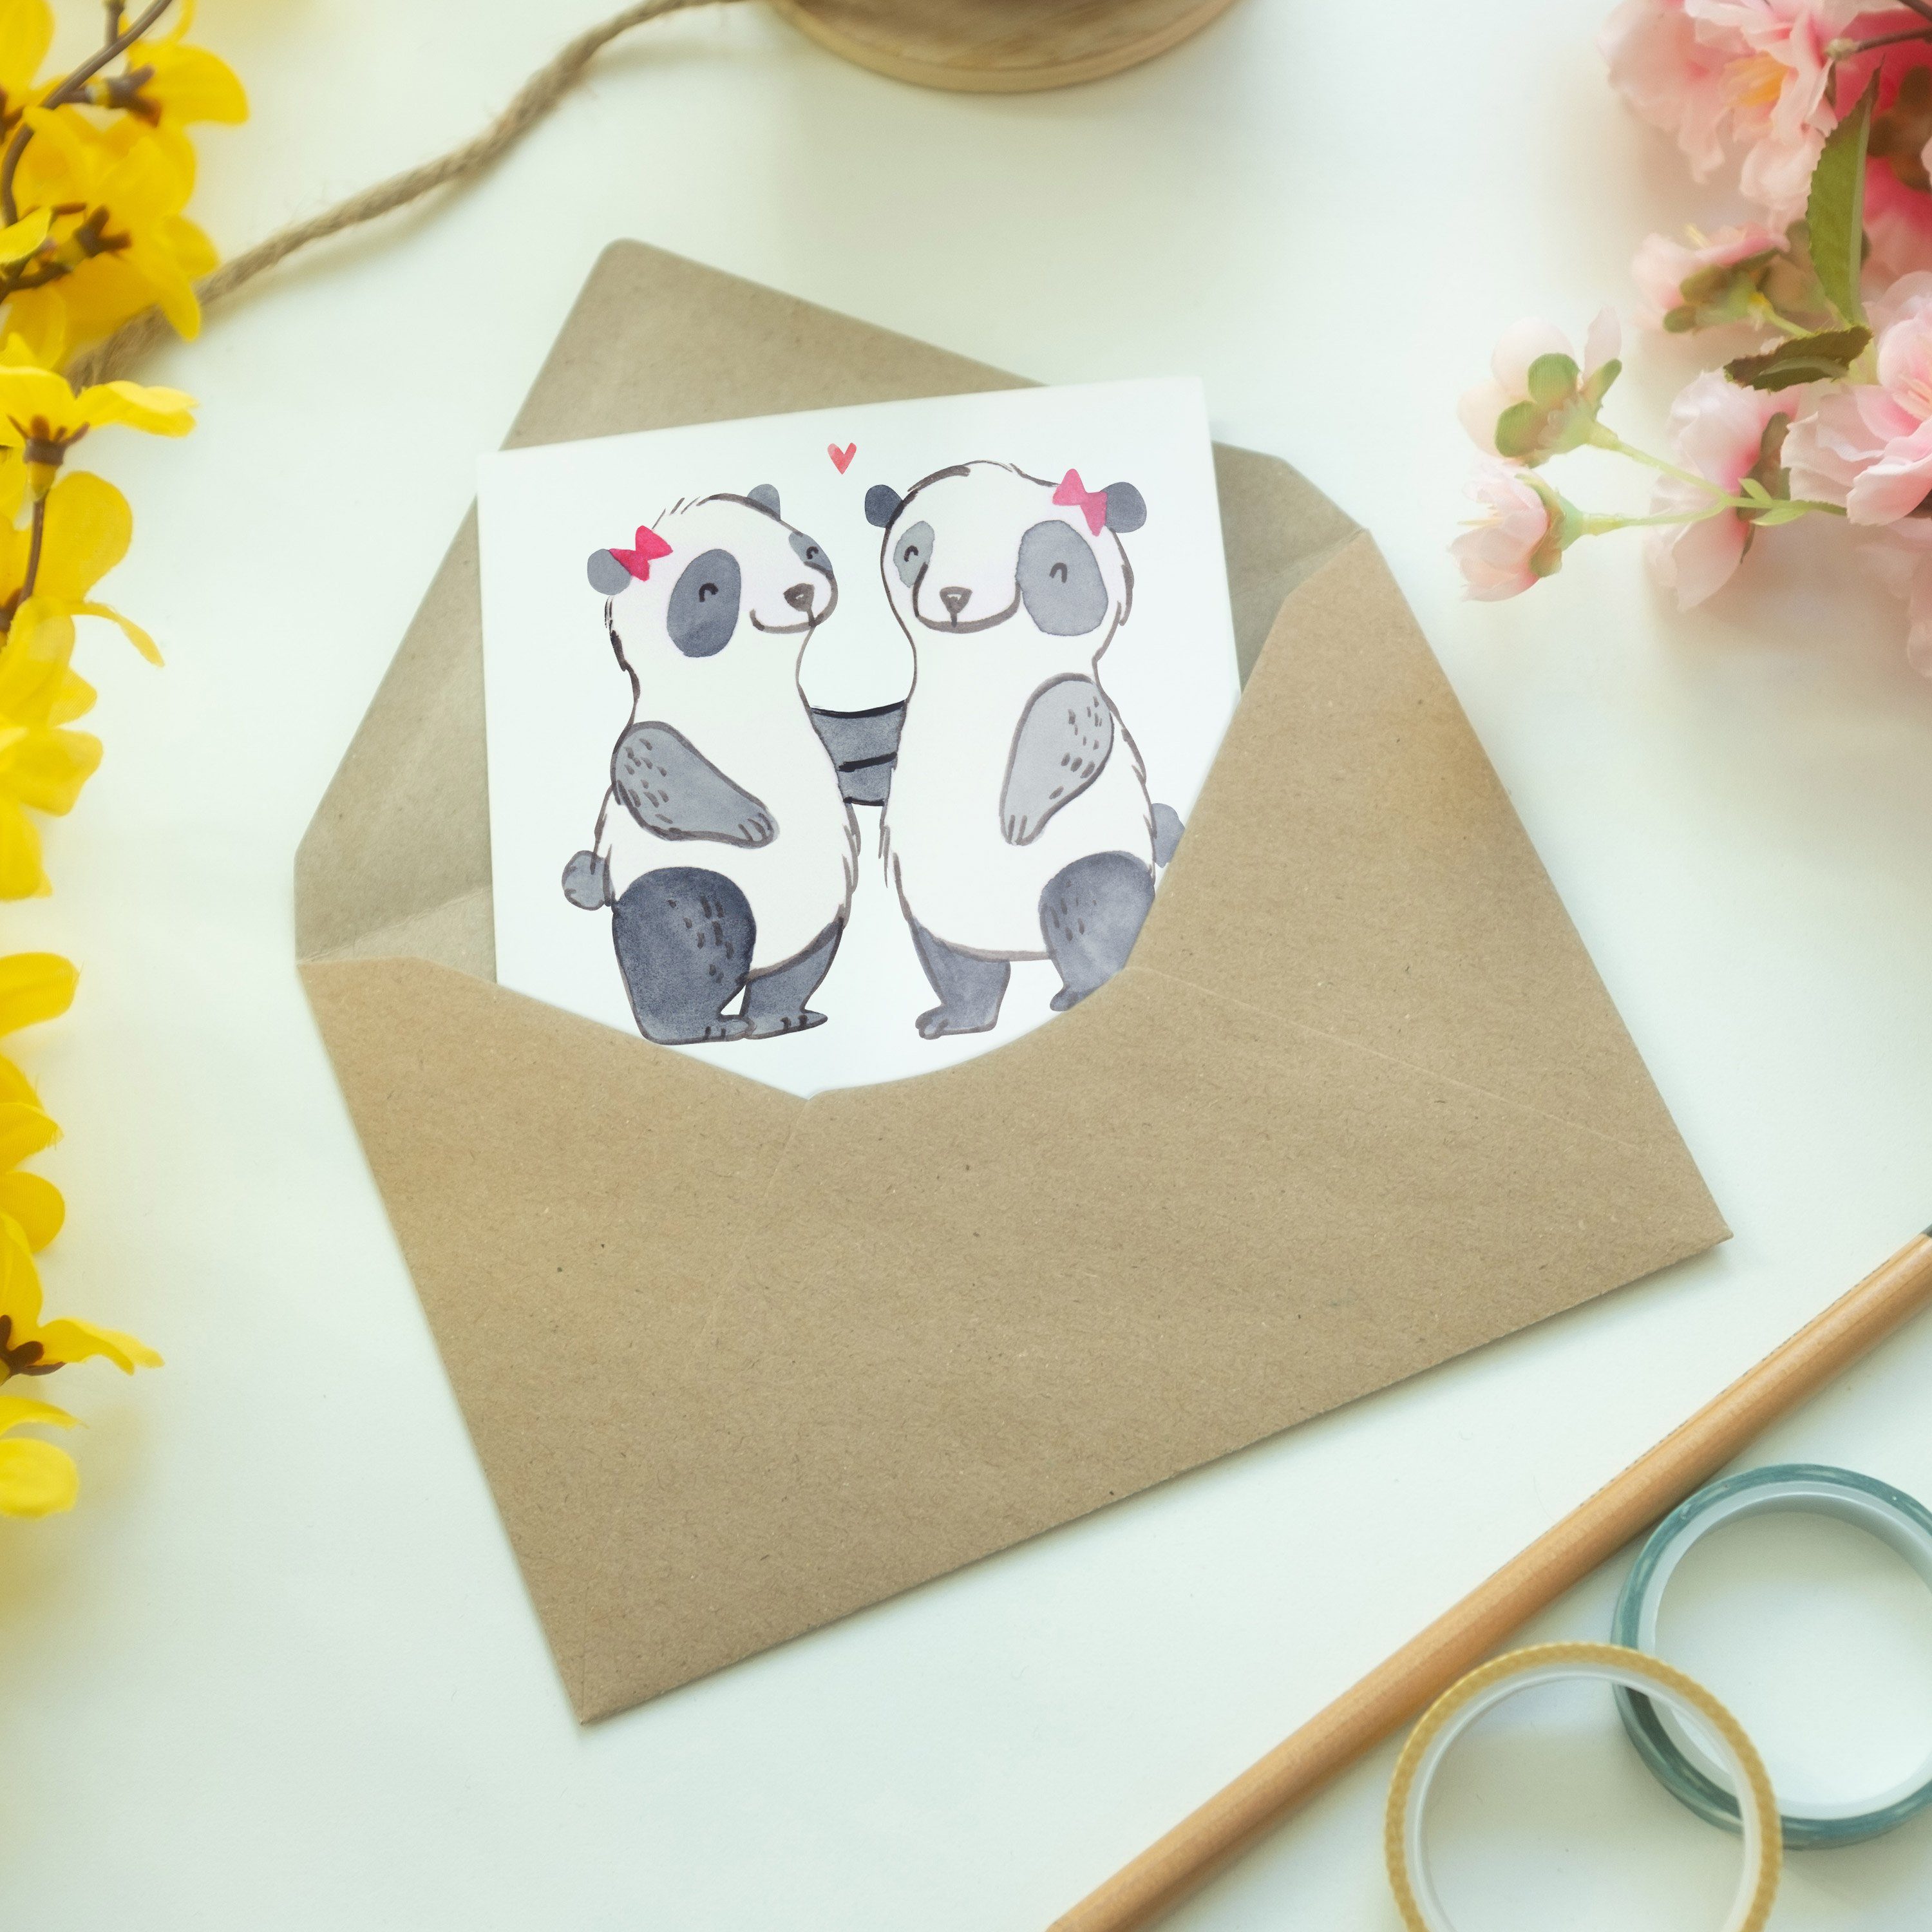 Geschenk, - Mrs. der Be & Mr. Einladungskarte, Welt Panda - Weiß Grußkarte Panda Schwester Beste